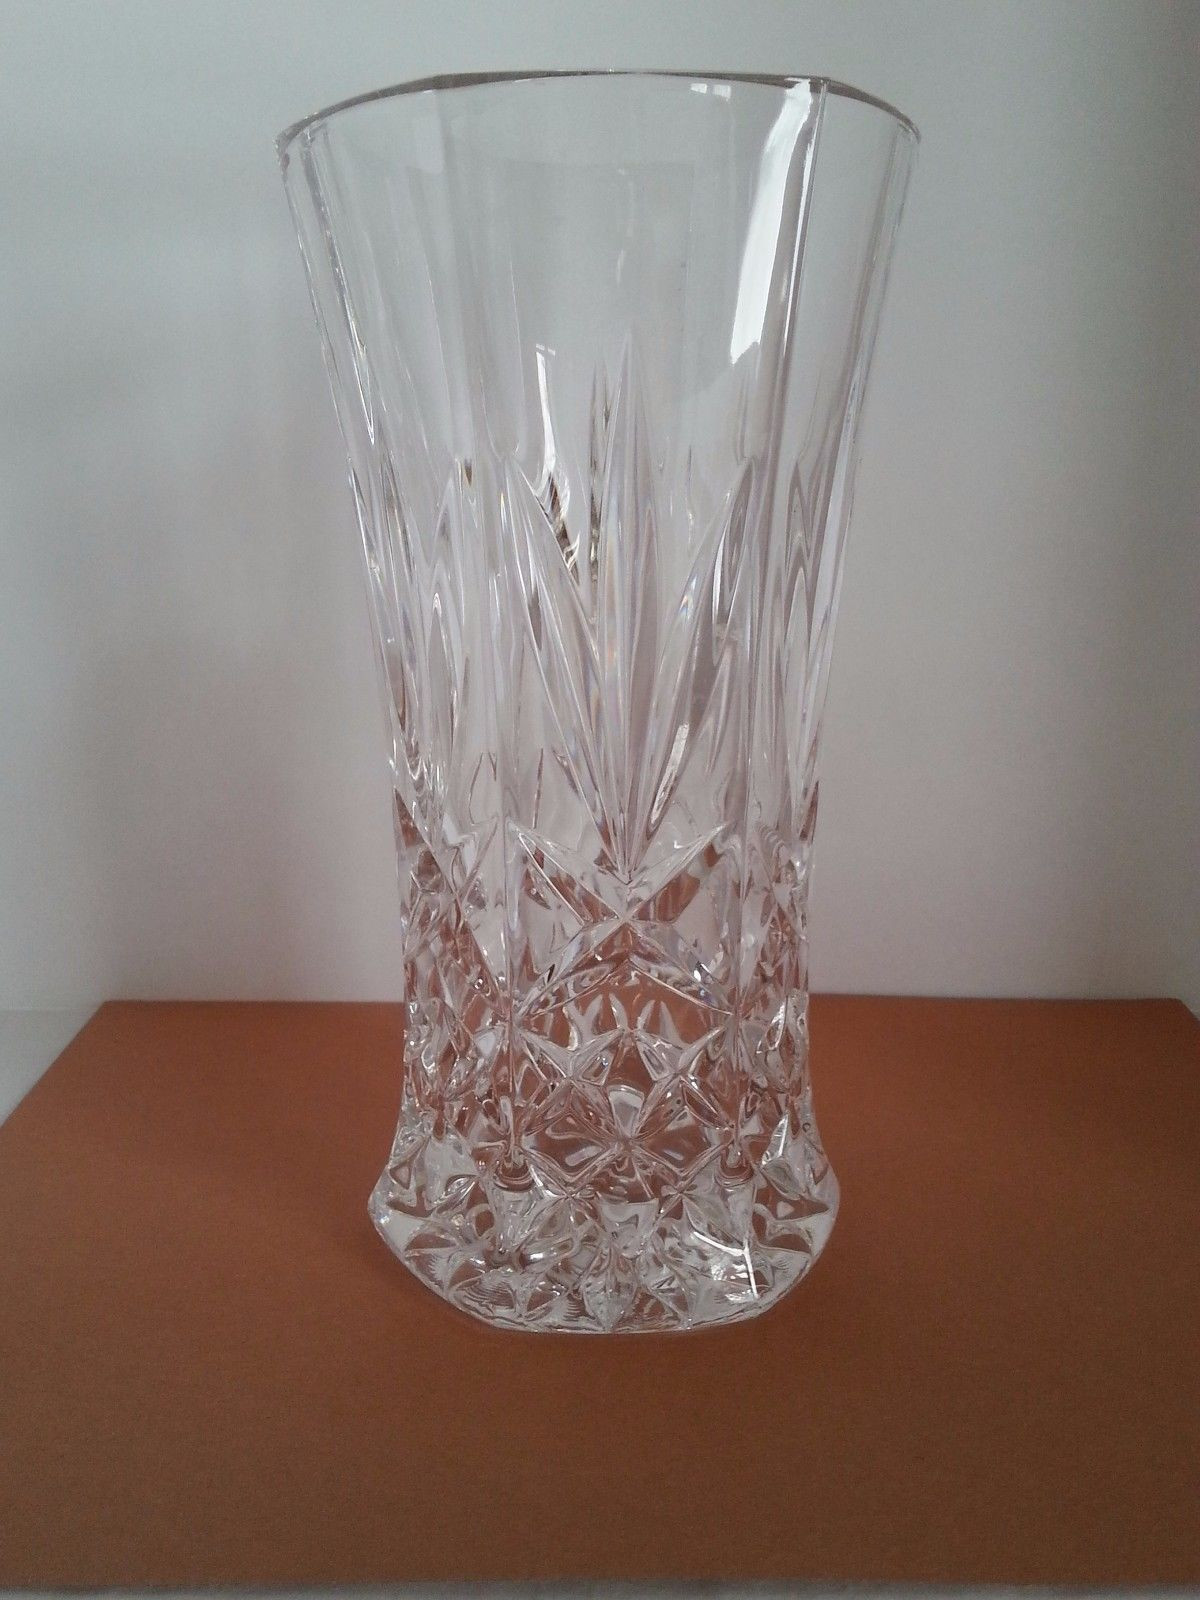 15 Unique Blue Cut Crystal Vase 2024 free download blue cut crystal vase of image result for vintage lead glass vase vintage pinterest throughout image result for vintage lead glass vase